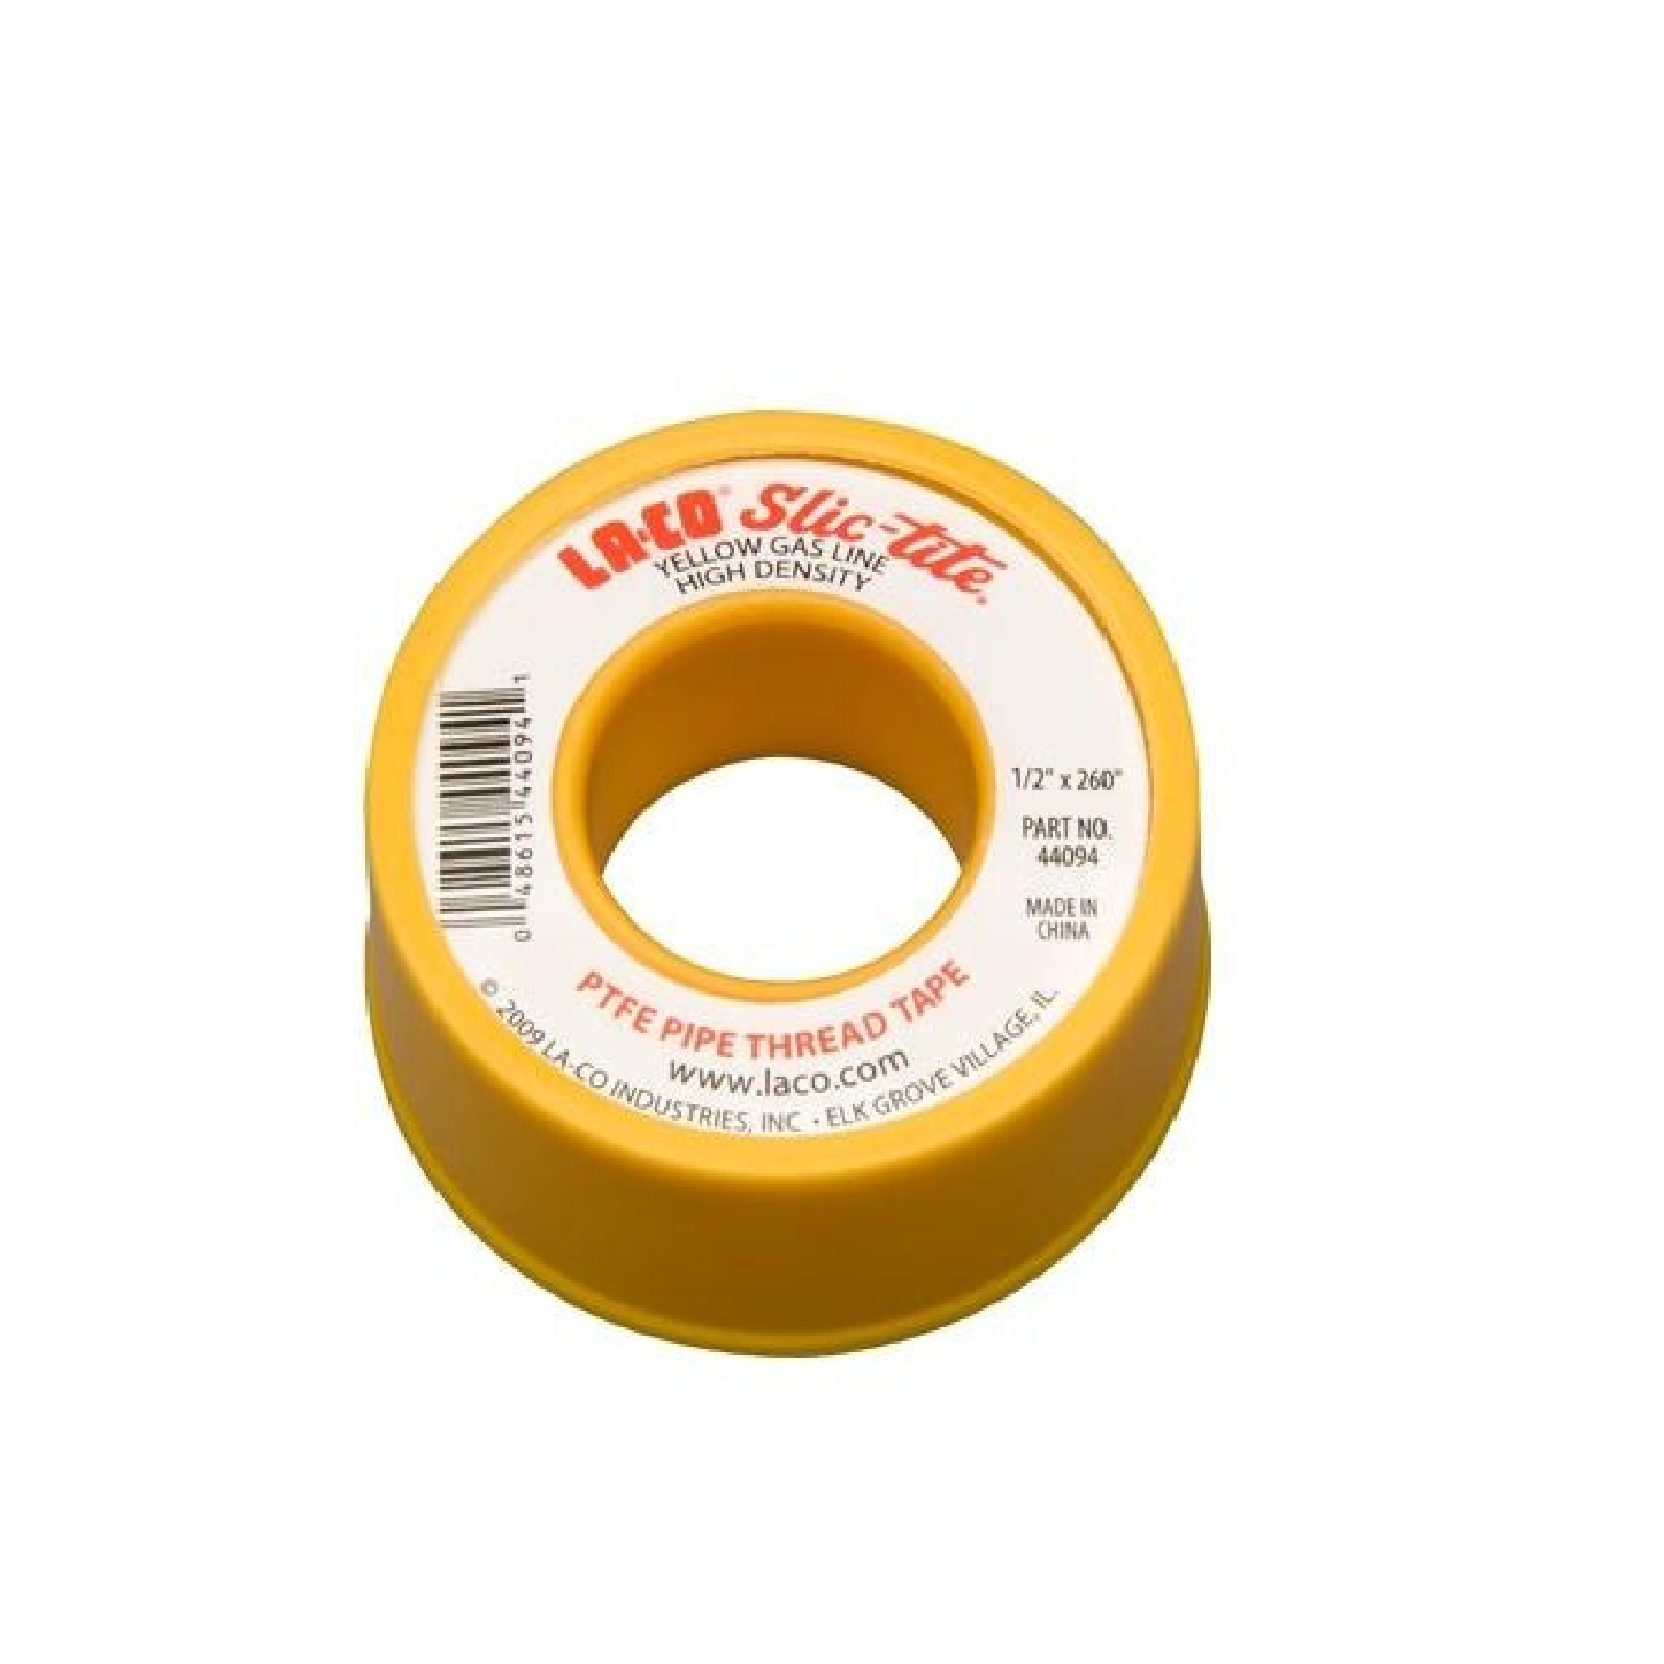 LACO 44094 SLIC-TITE PTFE Gas Line Pipe Thread Tape 12" x 260" Premium Grade